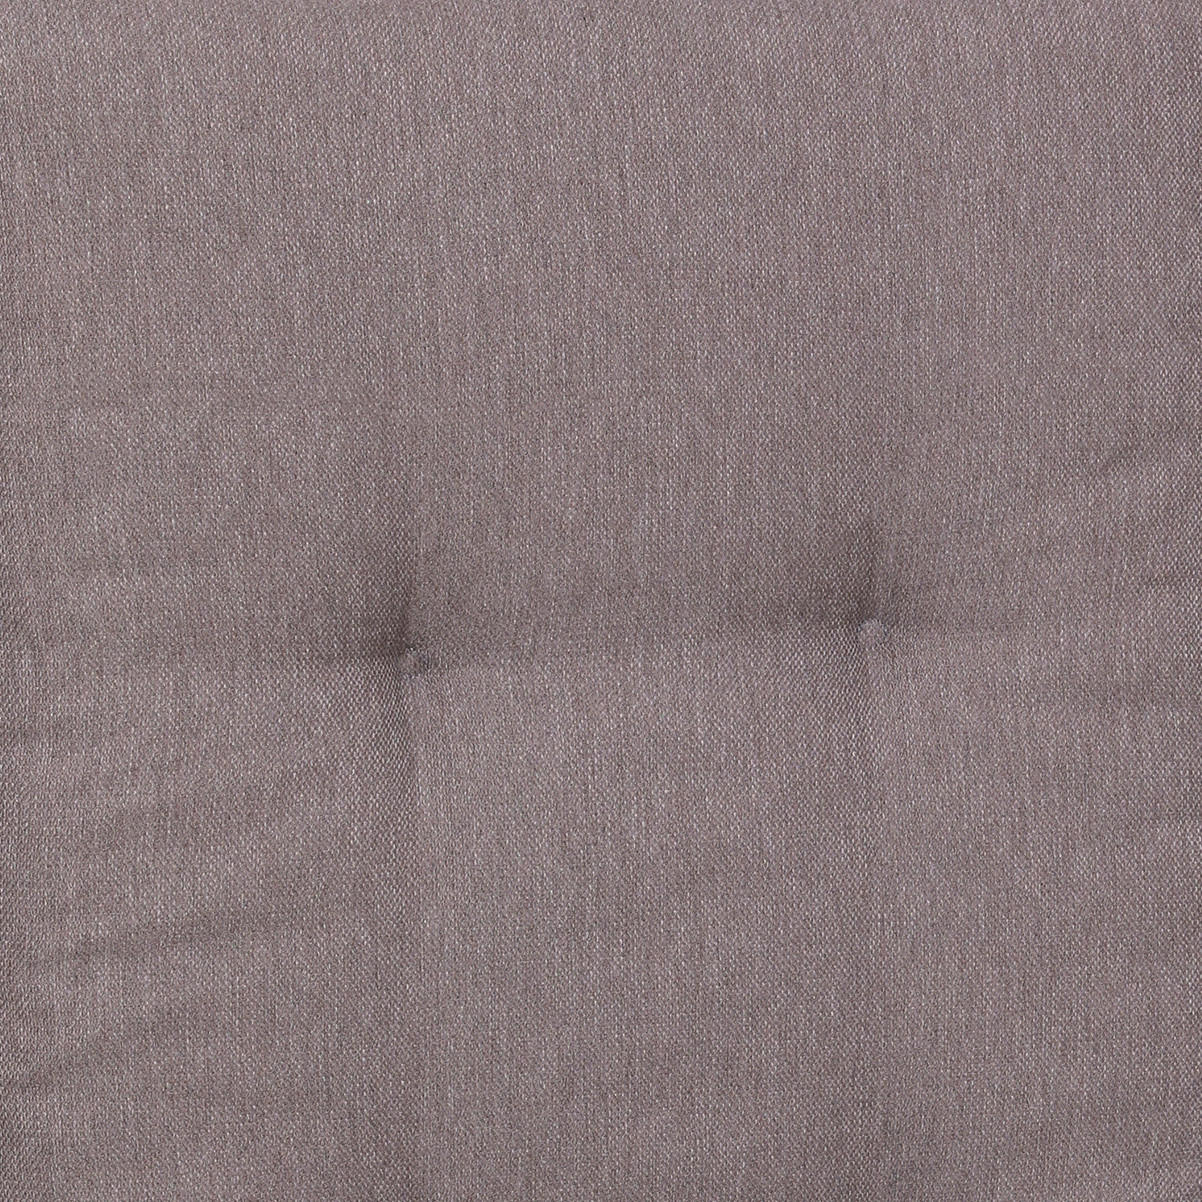 SESSELAUFLAGENSET in Taupe Uni  - Taupe, Basics, Textil (50/7/100cm)